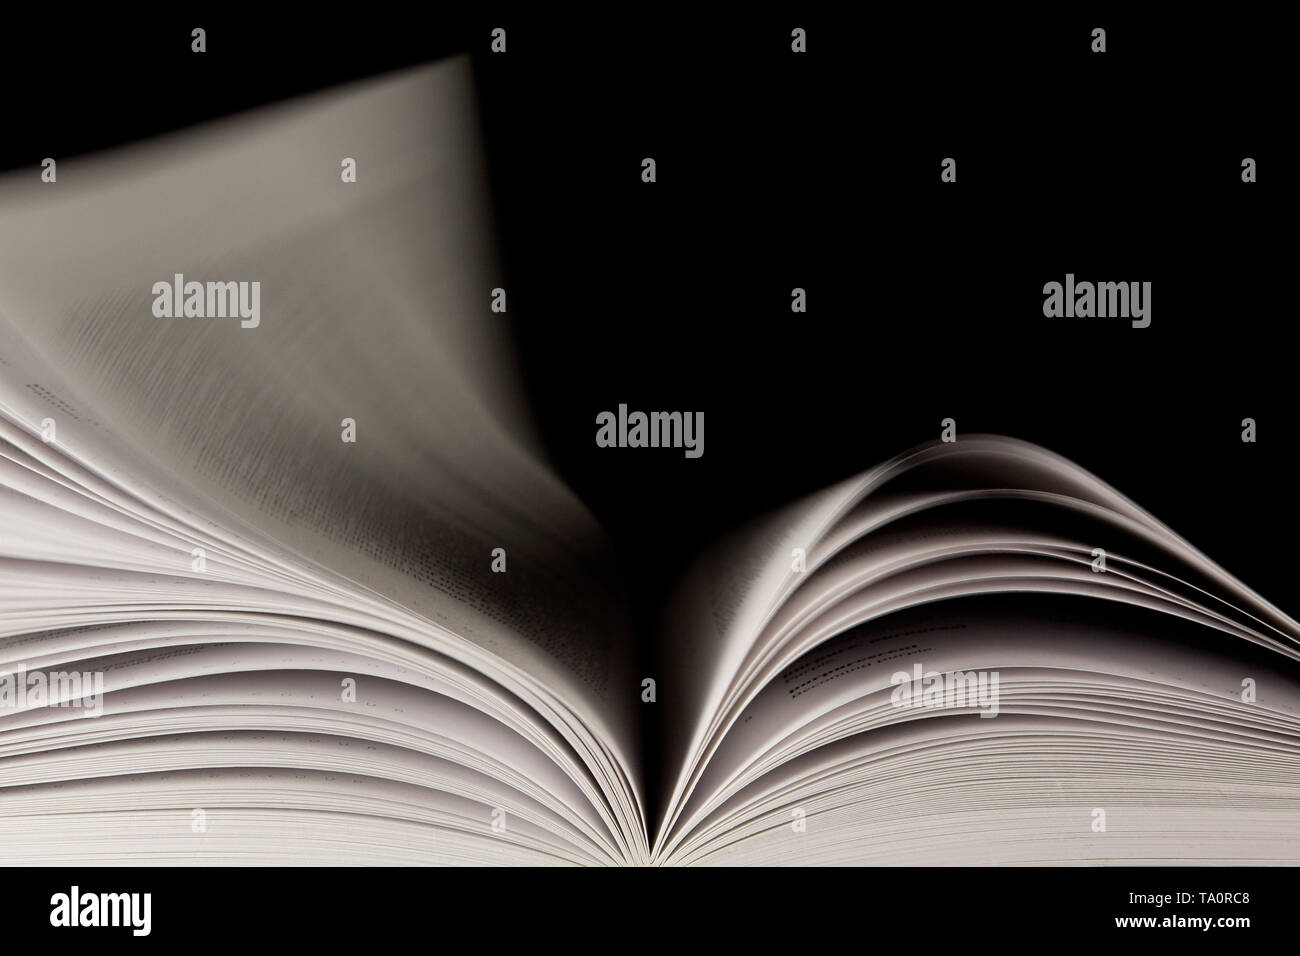 Un vero page turner! Libro fotografato come le pagine giro veloce. Foto Stock